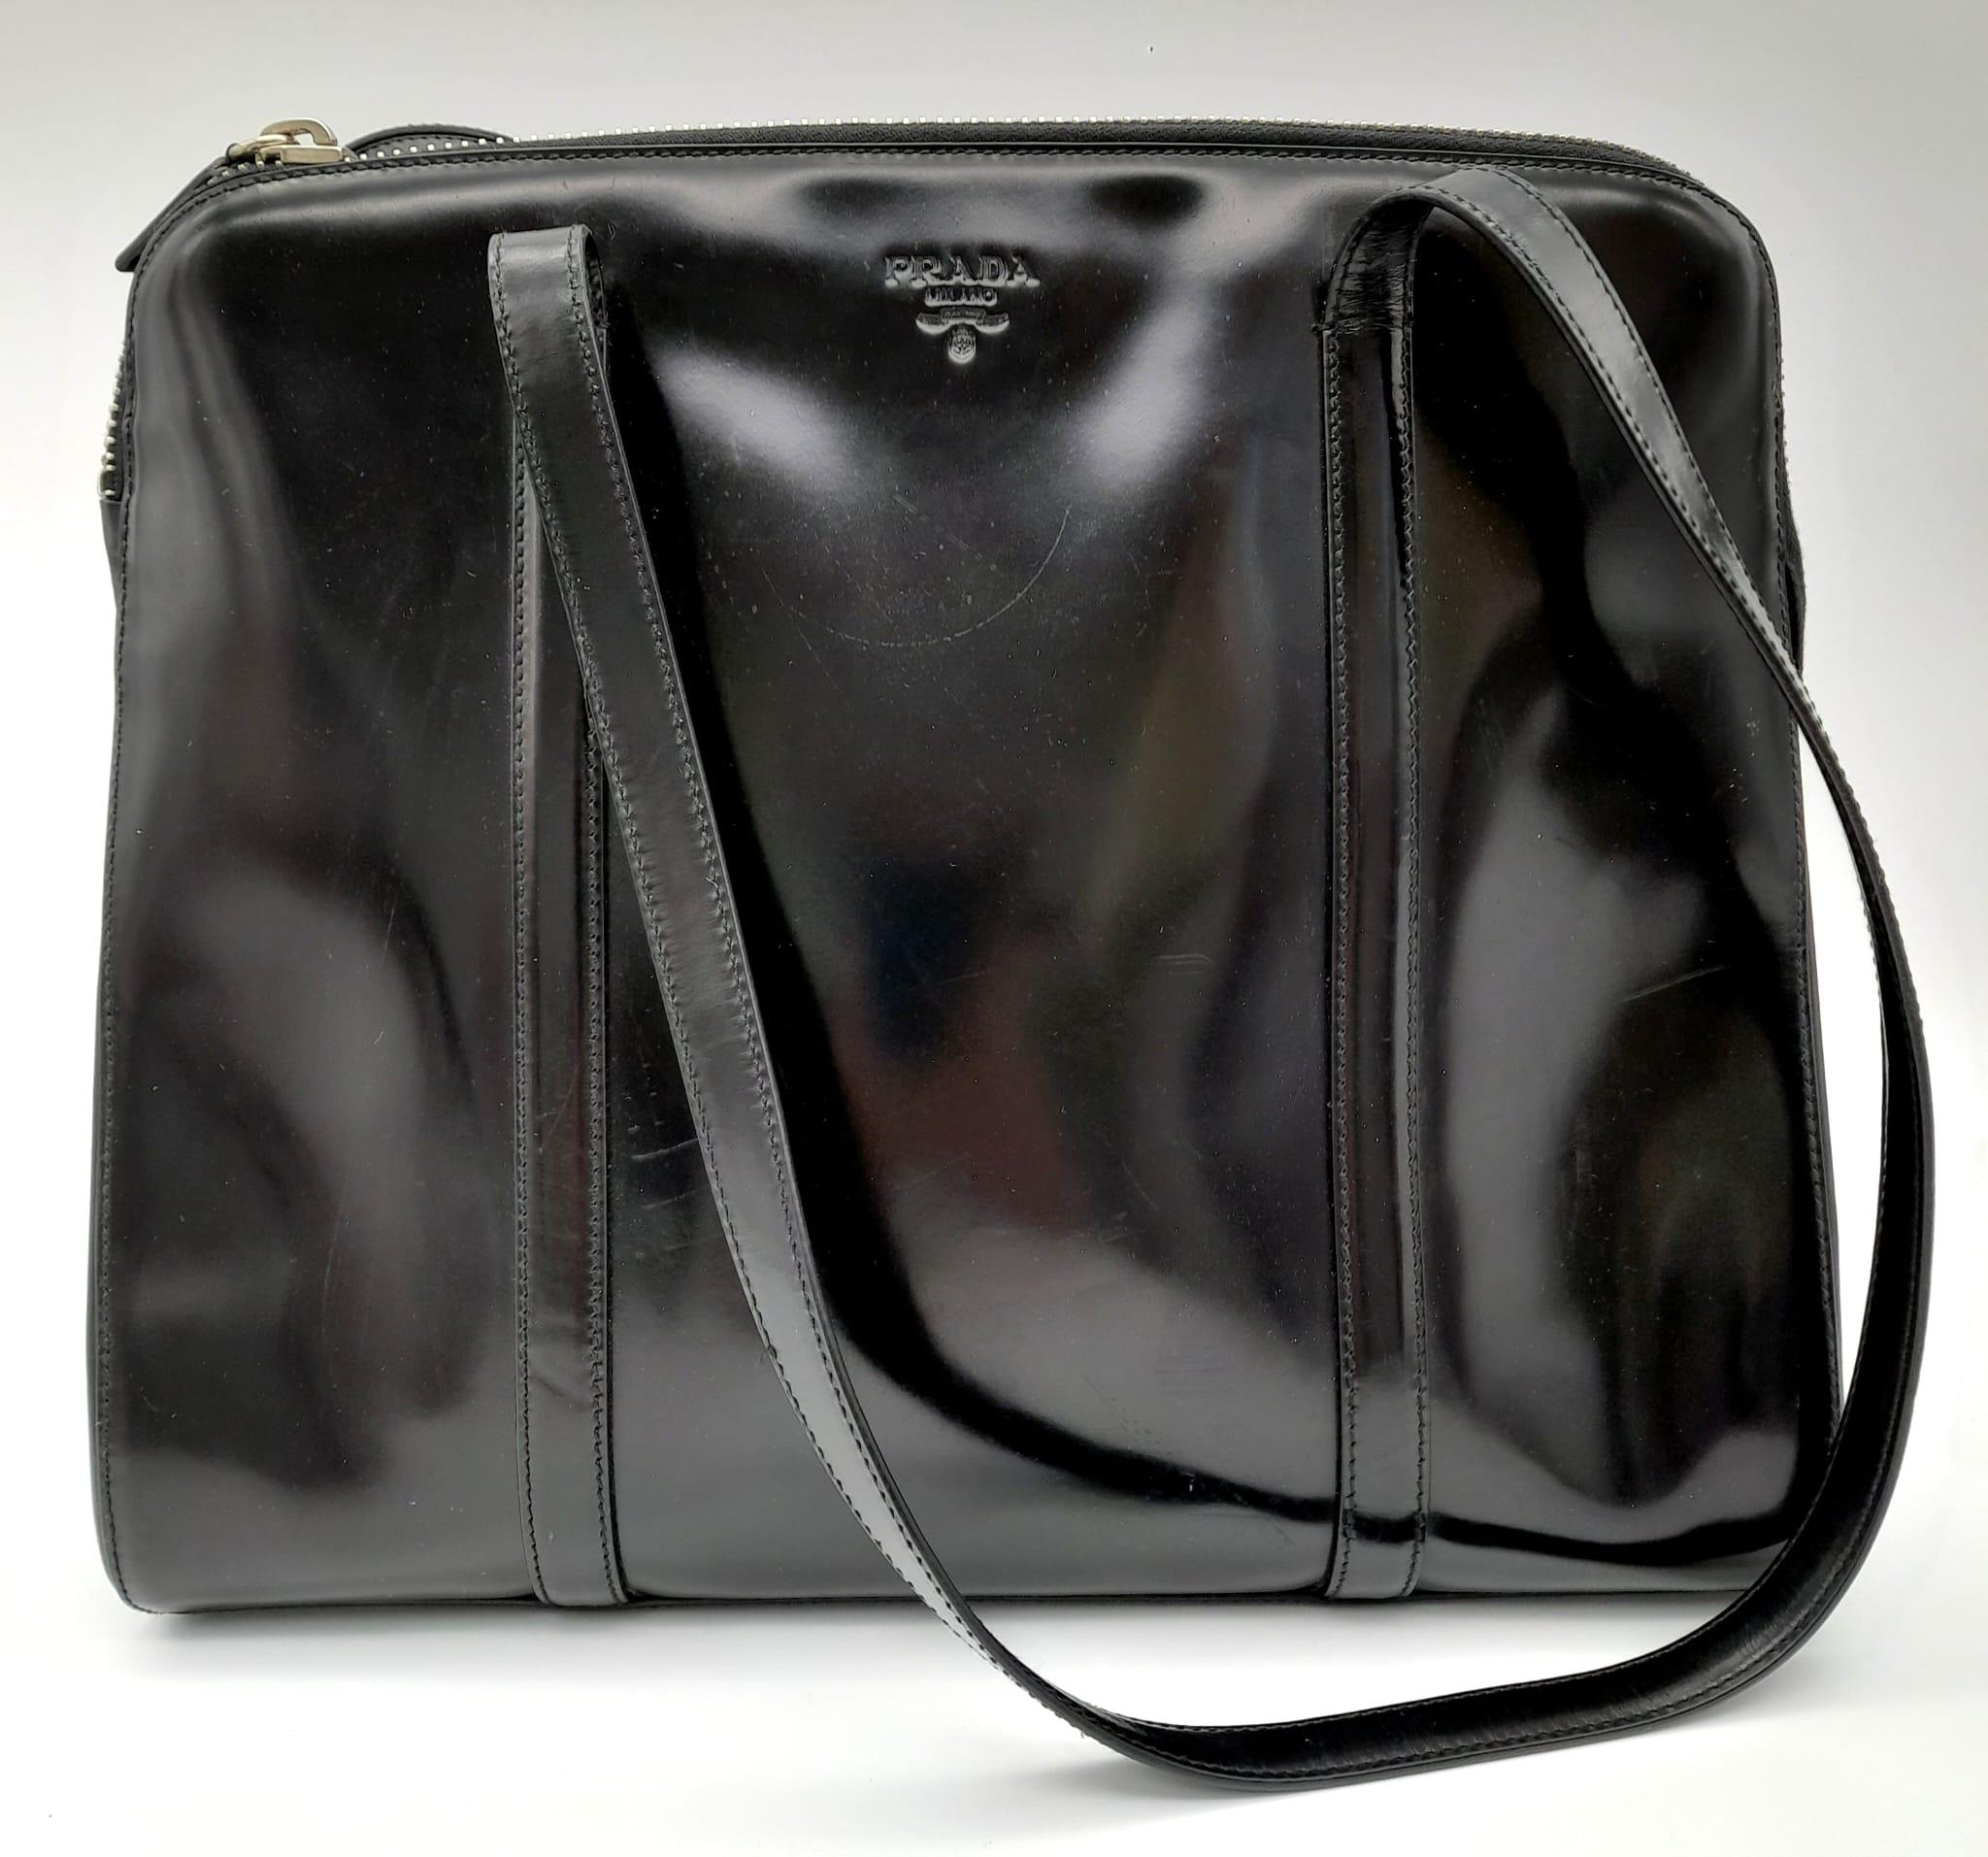 A Prada Patent Black Leather Shoulder Bag. Prada branding on exterior. Cloth monogram interior with